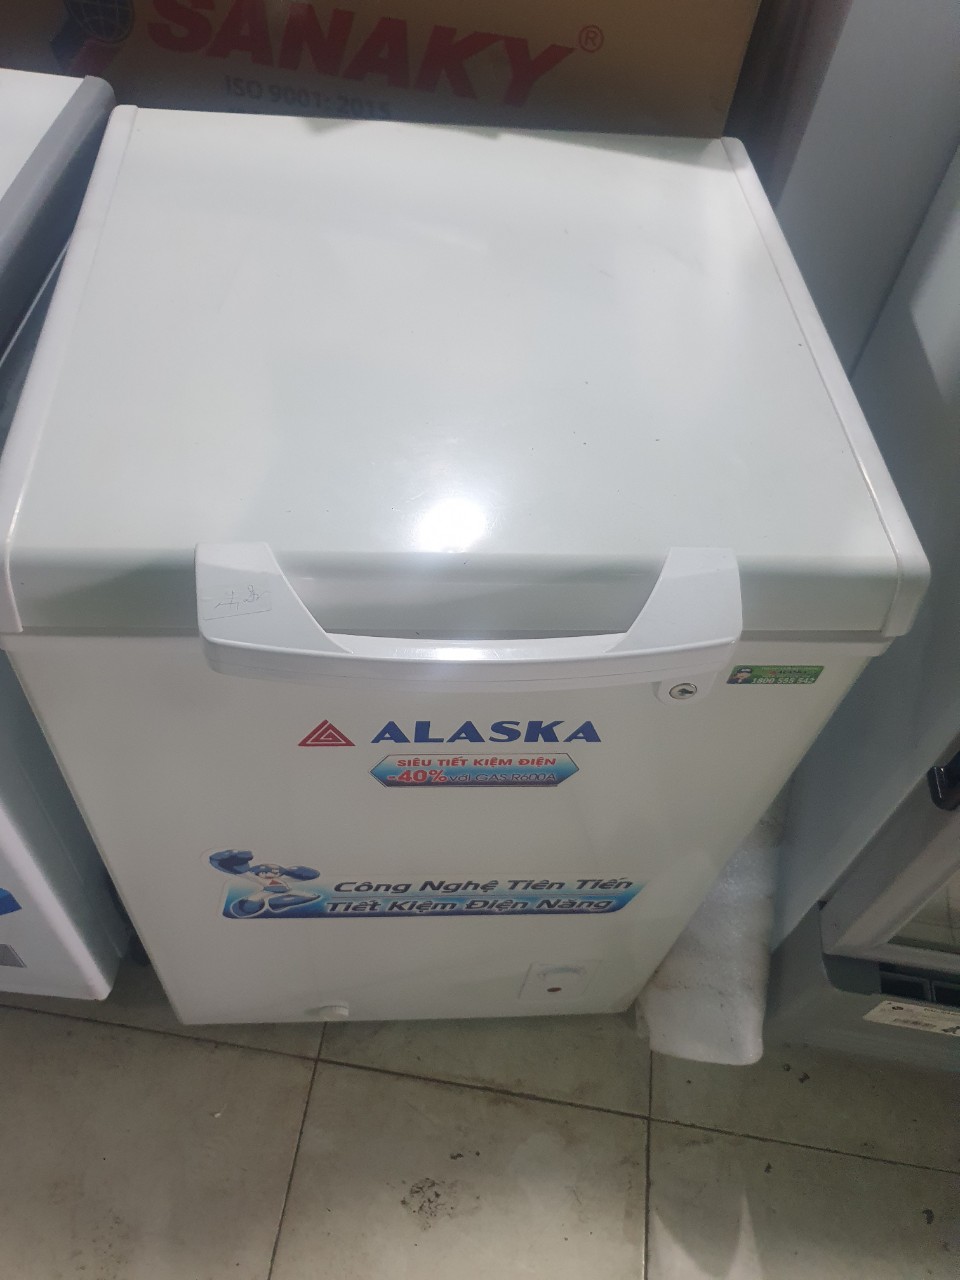 tủ đong alaska 100 lít đẹp đã qua sử dụng lh 0968810979 trước khi đặt hàng vì số lượng có...